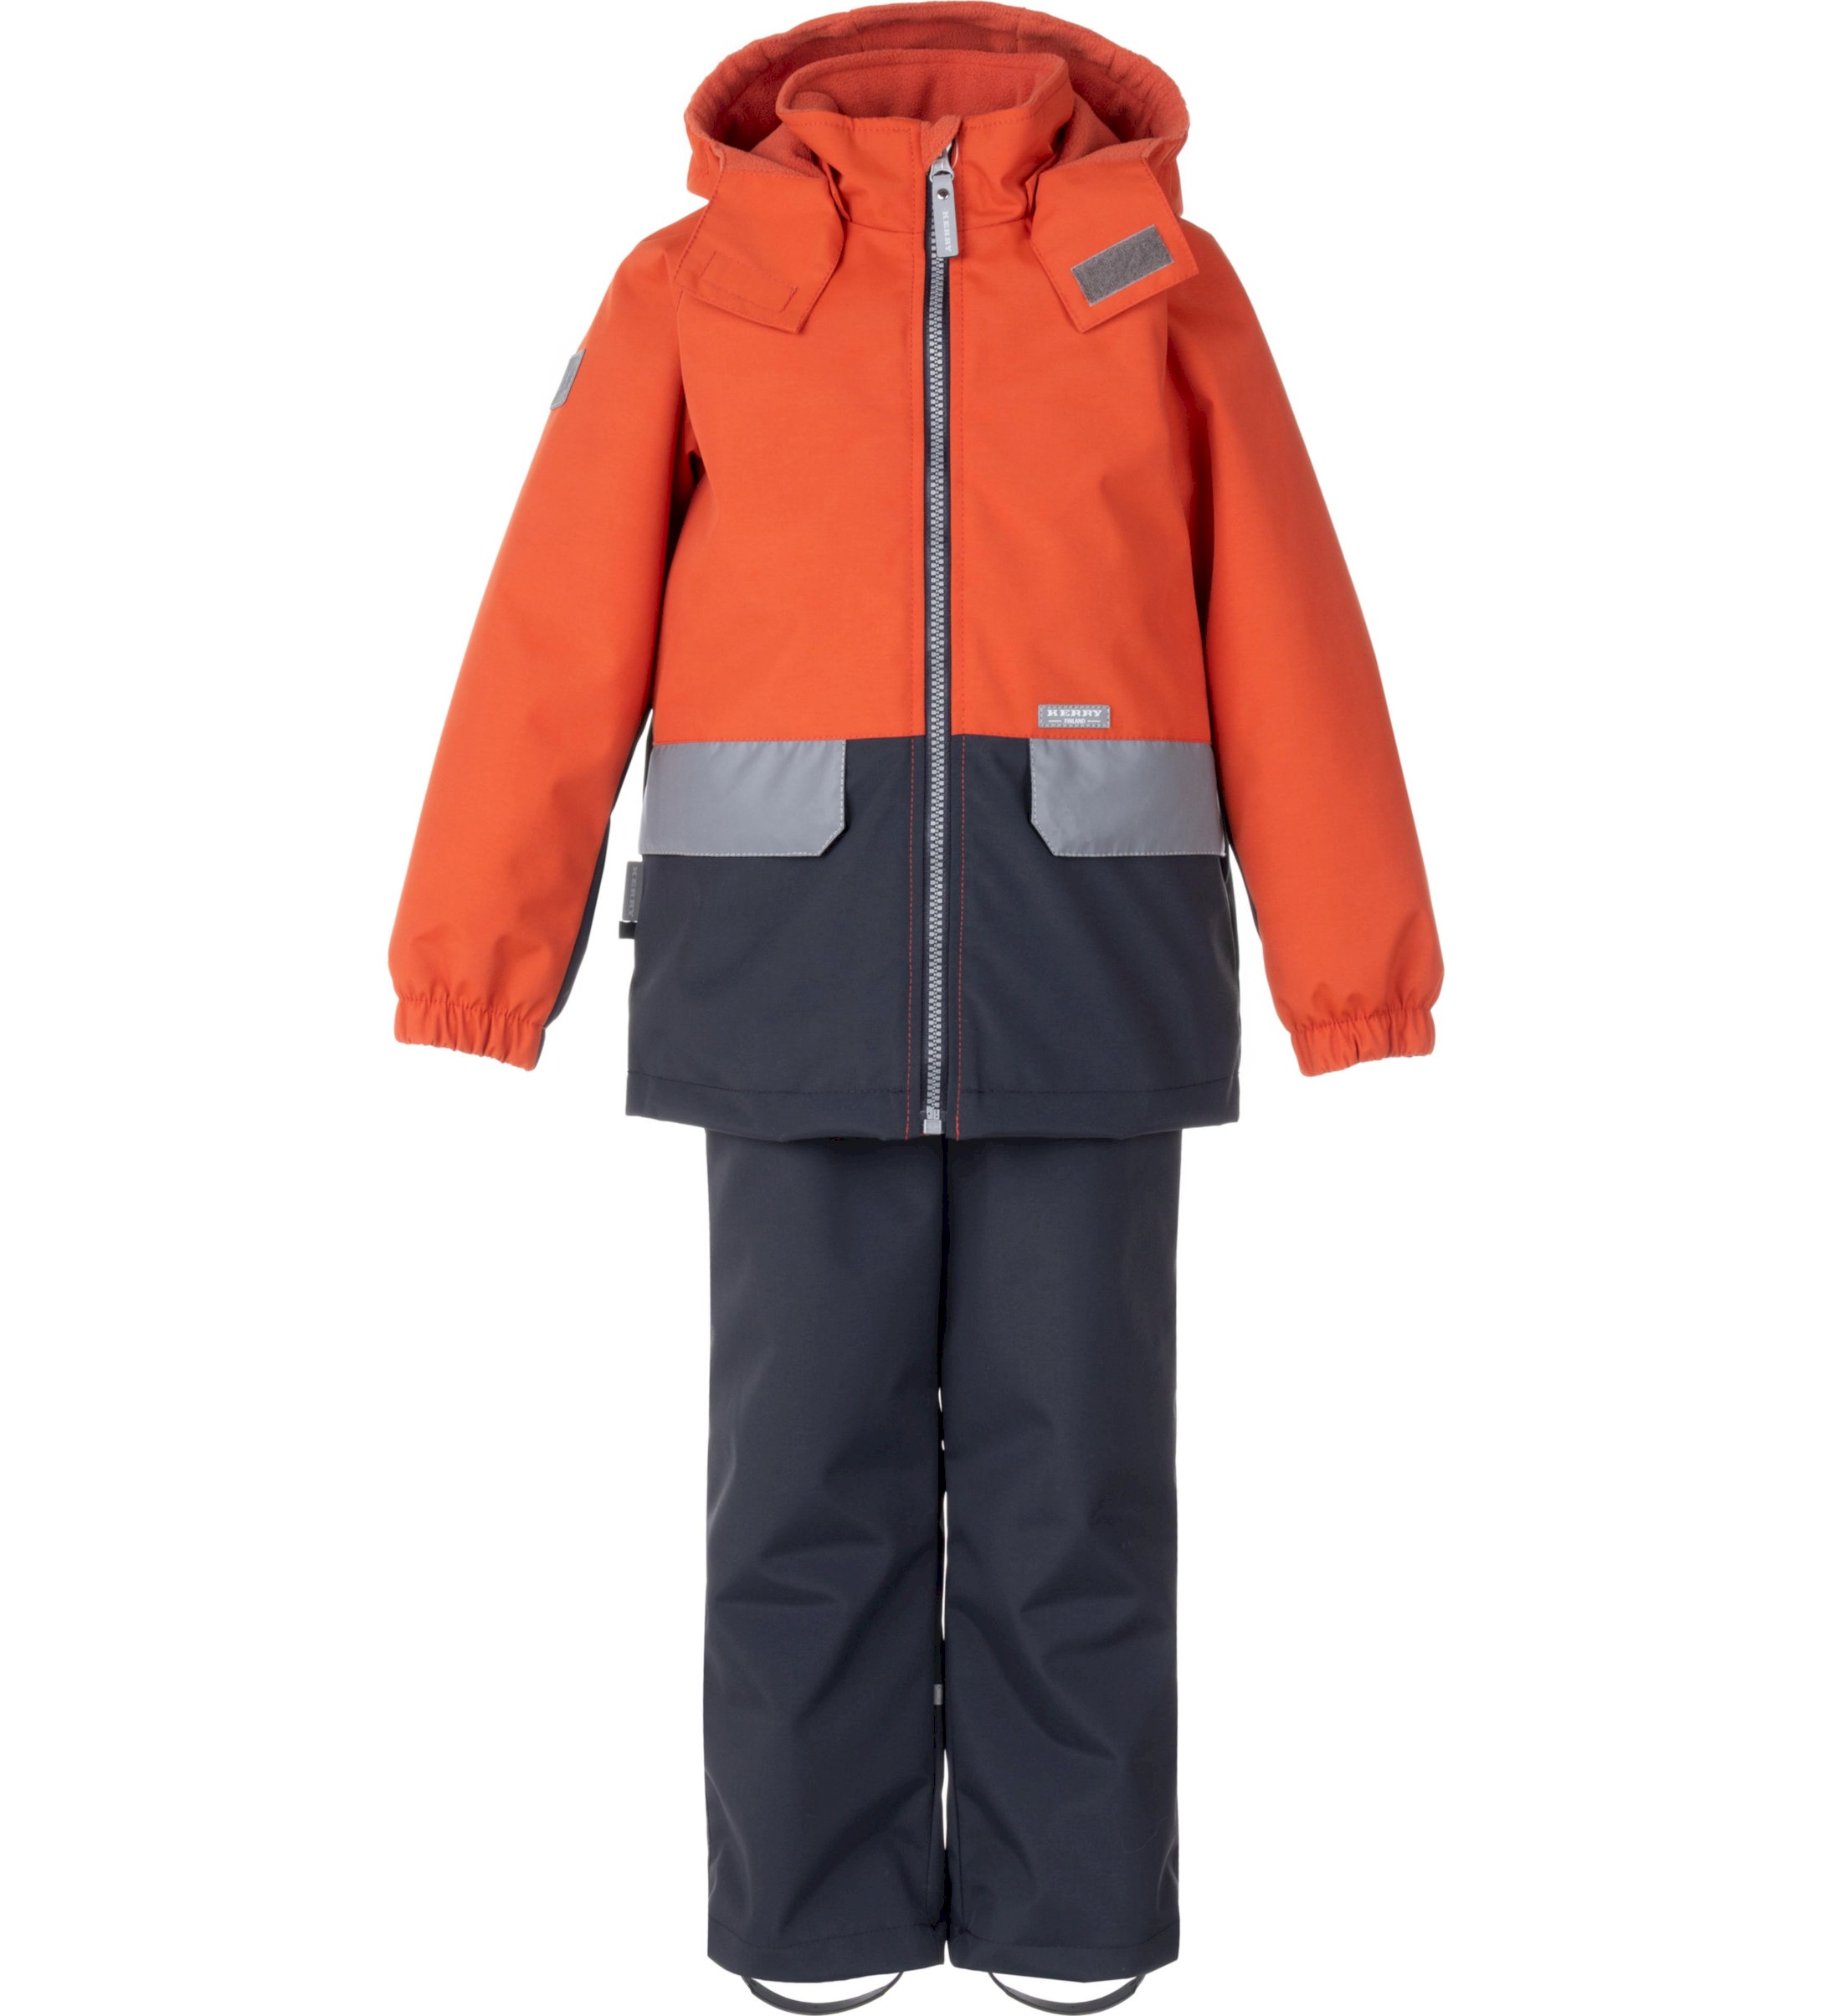 Комплект верхней одежды детский KERRY K24020, оранжевый; серый, 116